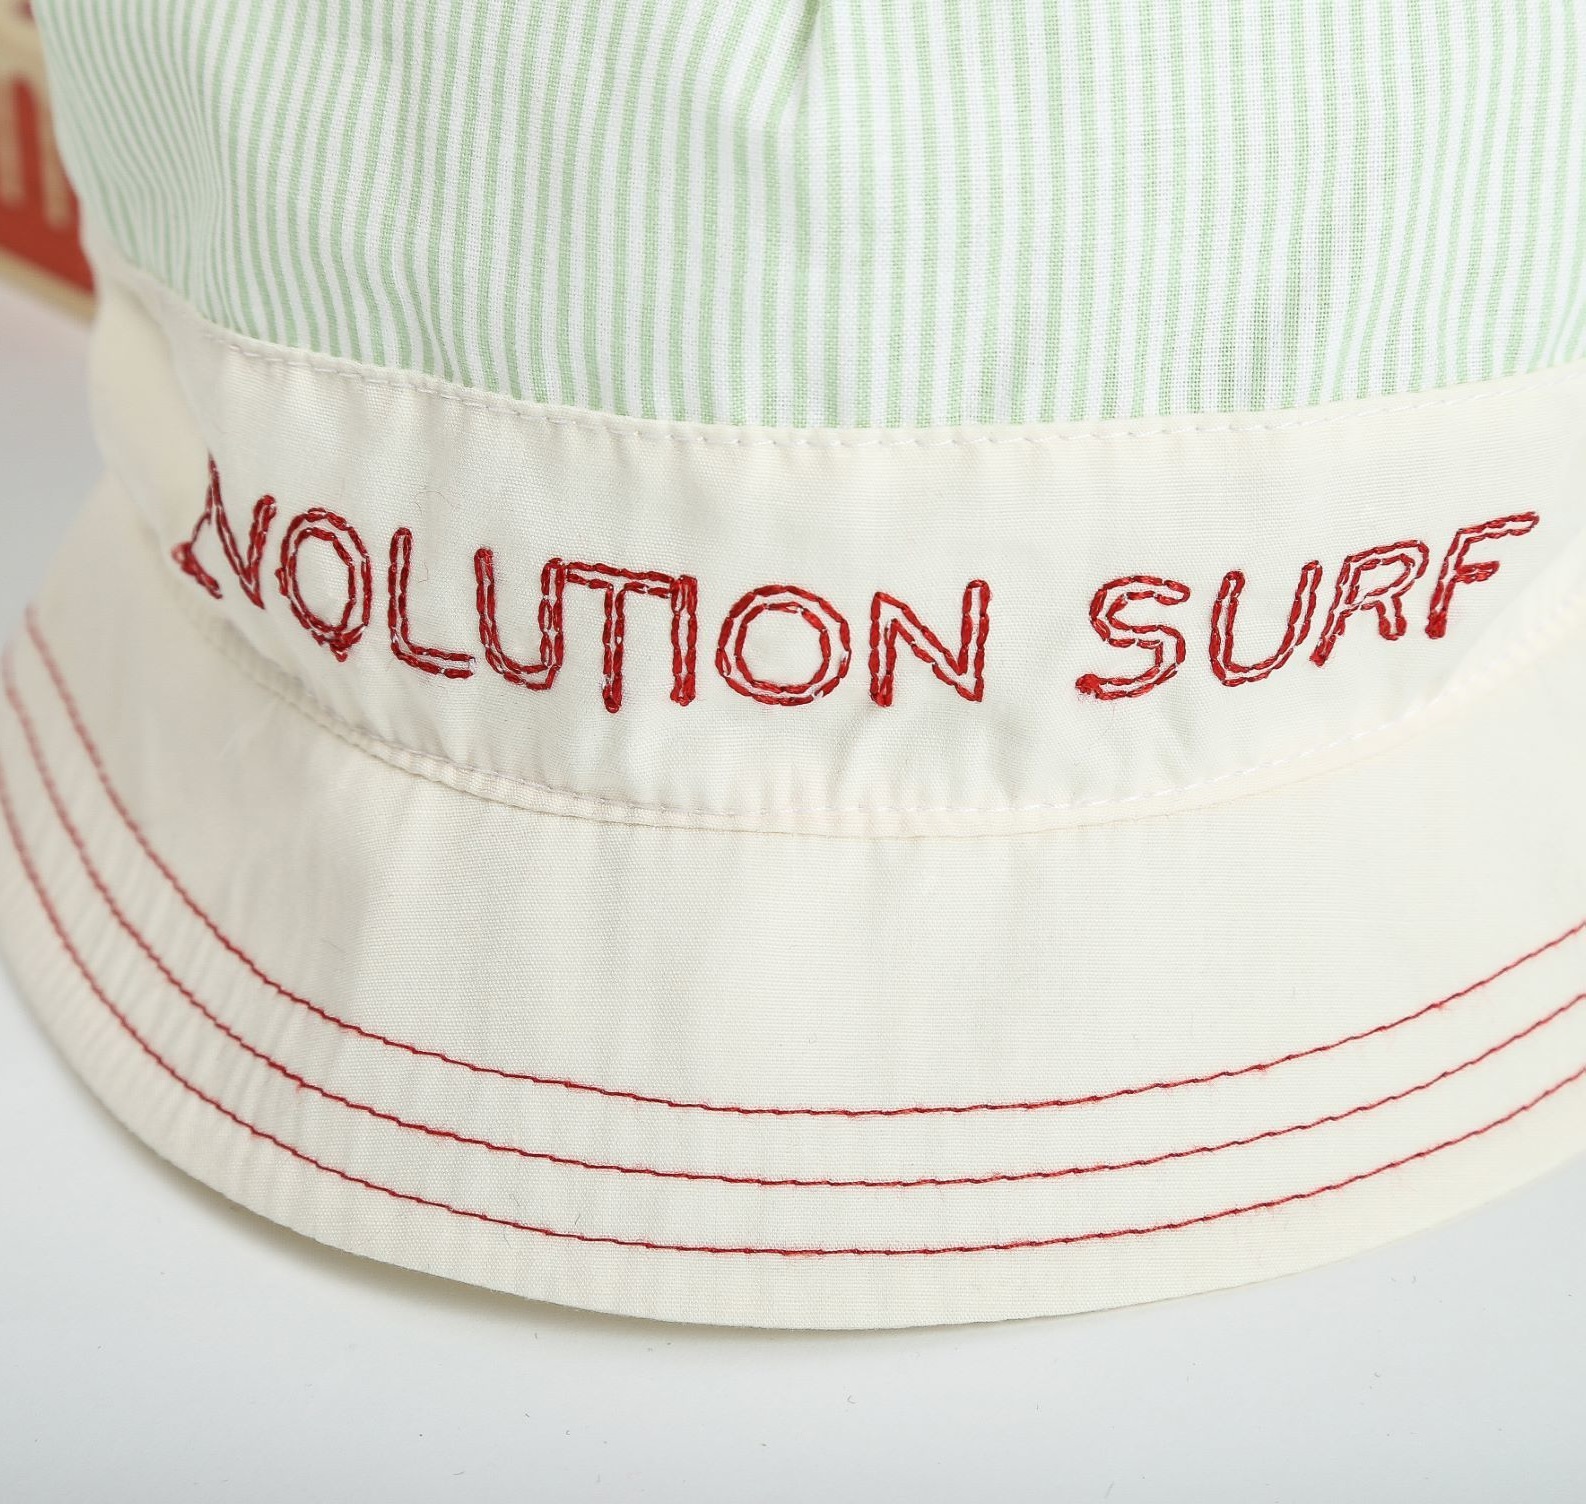 Панама Evolution Surf, зеленая, р. 54